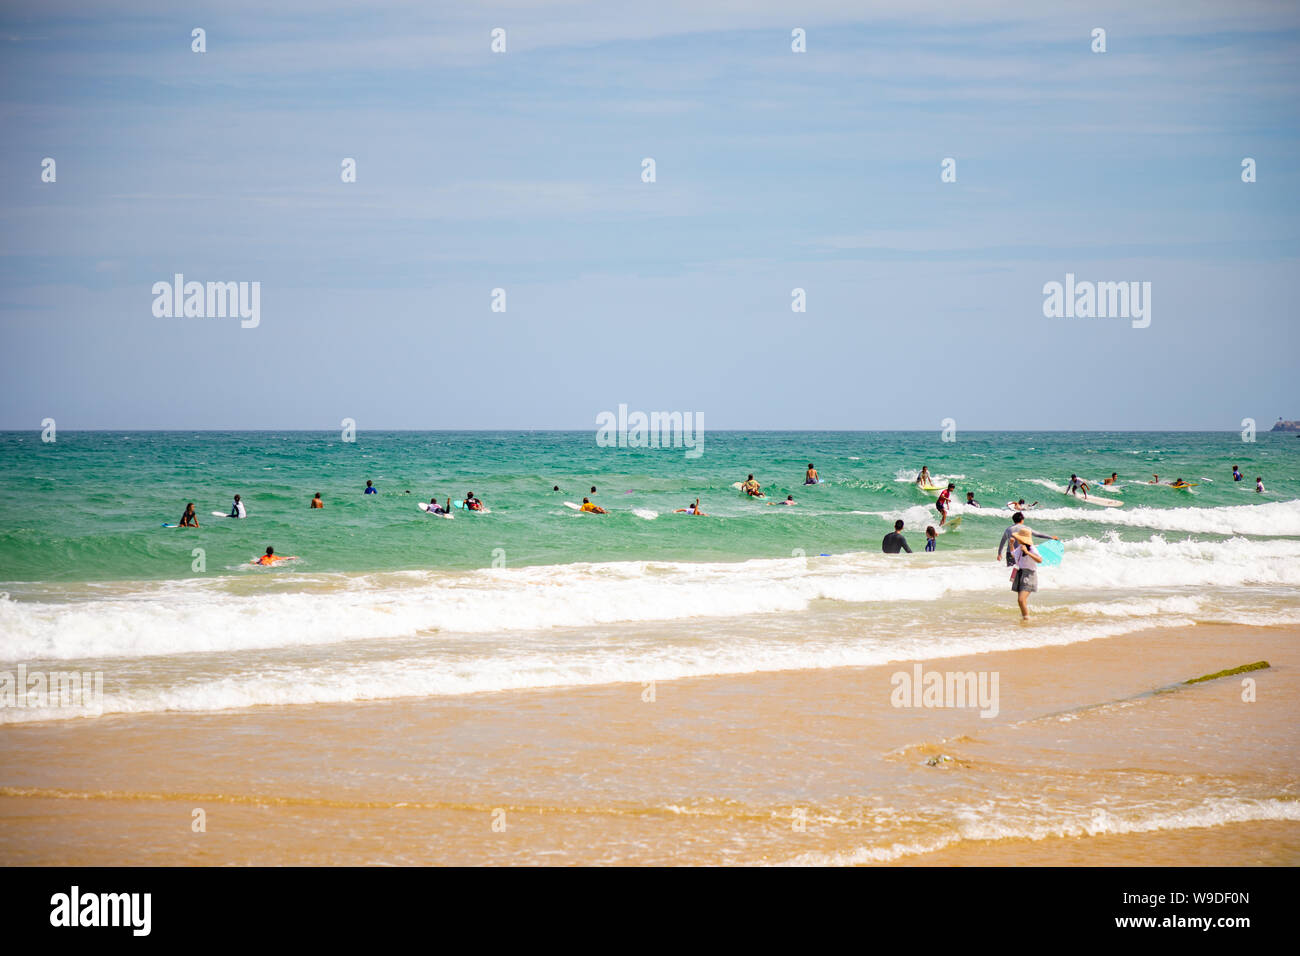 Sanya, Hainan Island, China - 22.06.2019: Leute am Strand und im Meer in Bereich für Surfen, Hainan, China Stockfoto